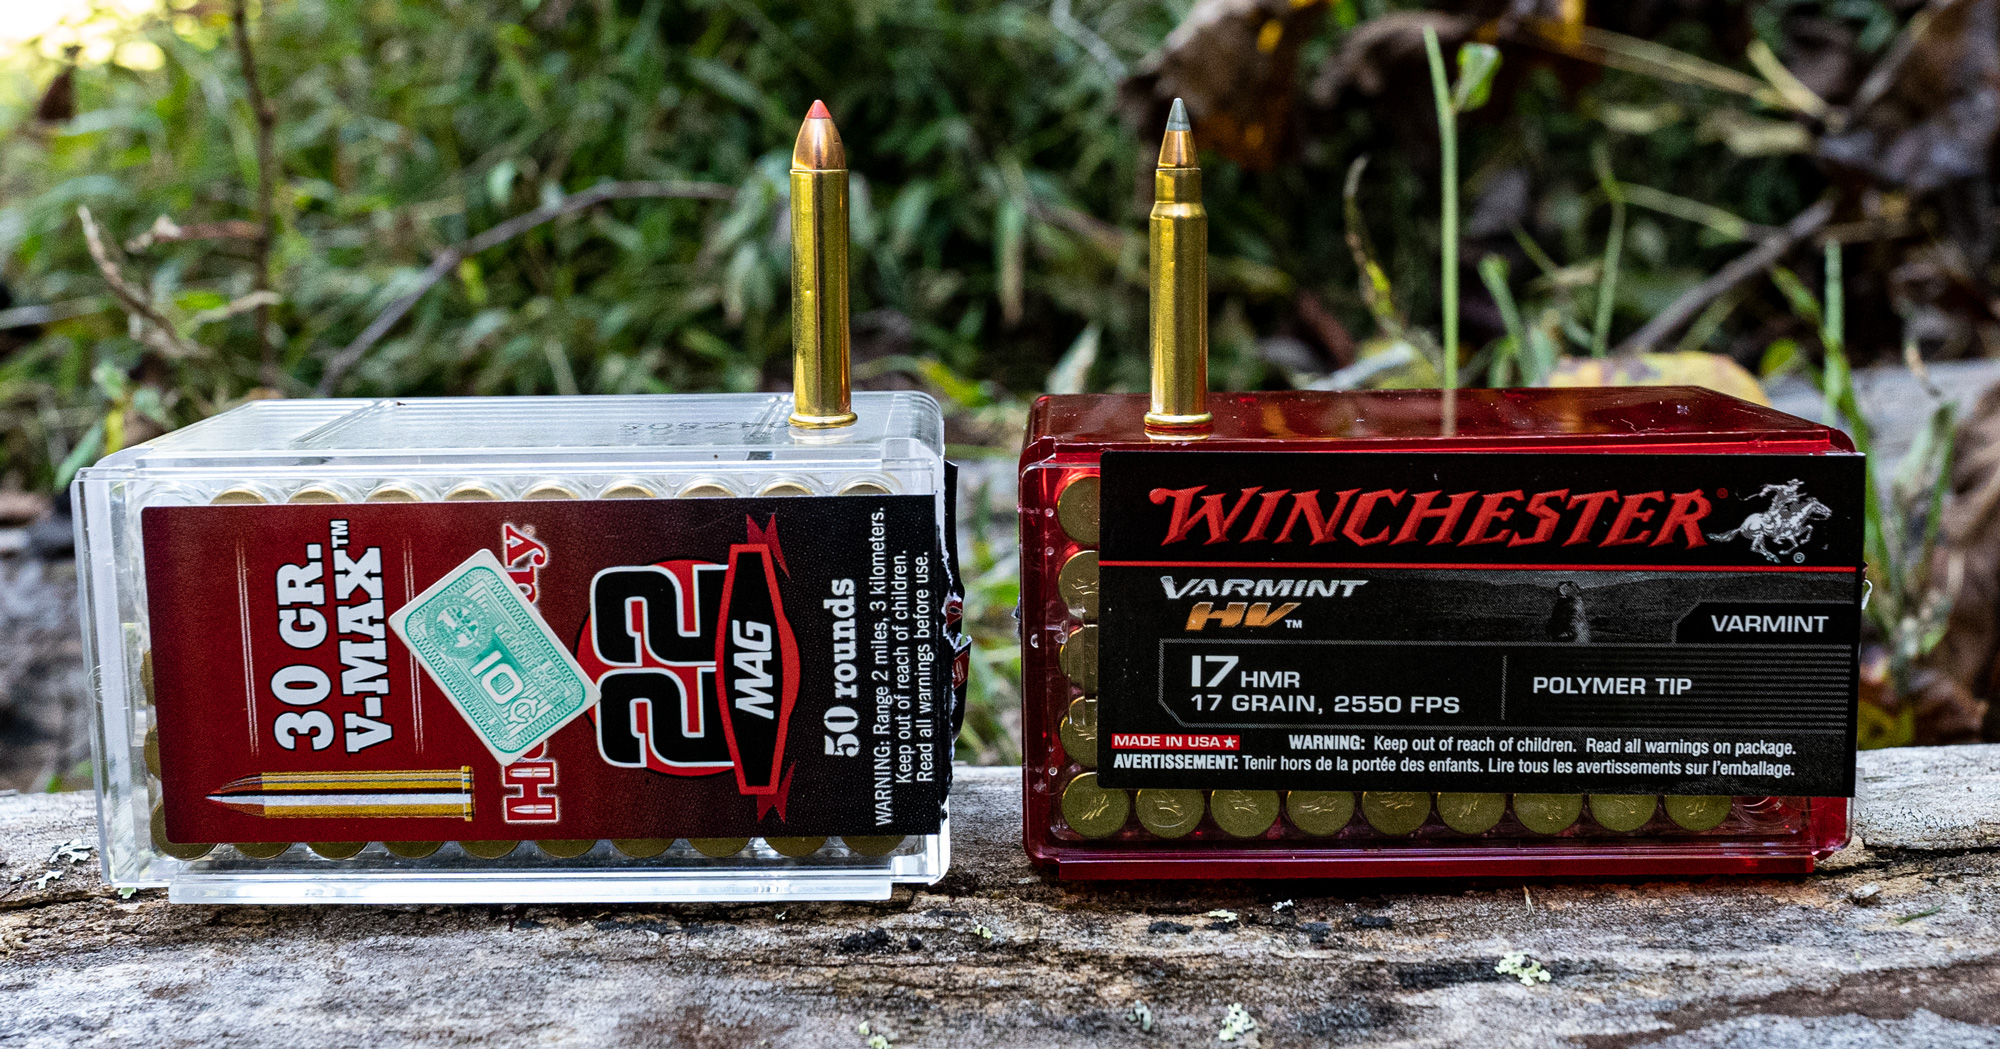 22 WMR vs 17 HMR ammo cartridges side by side